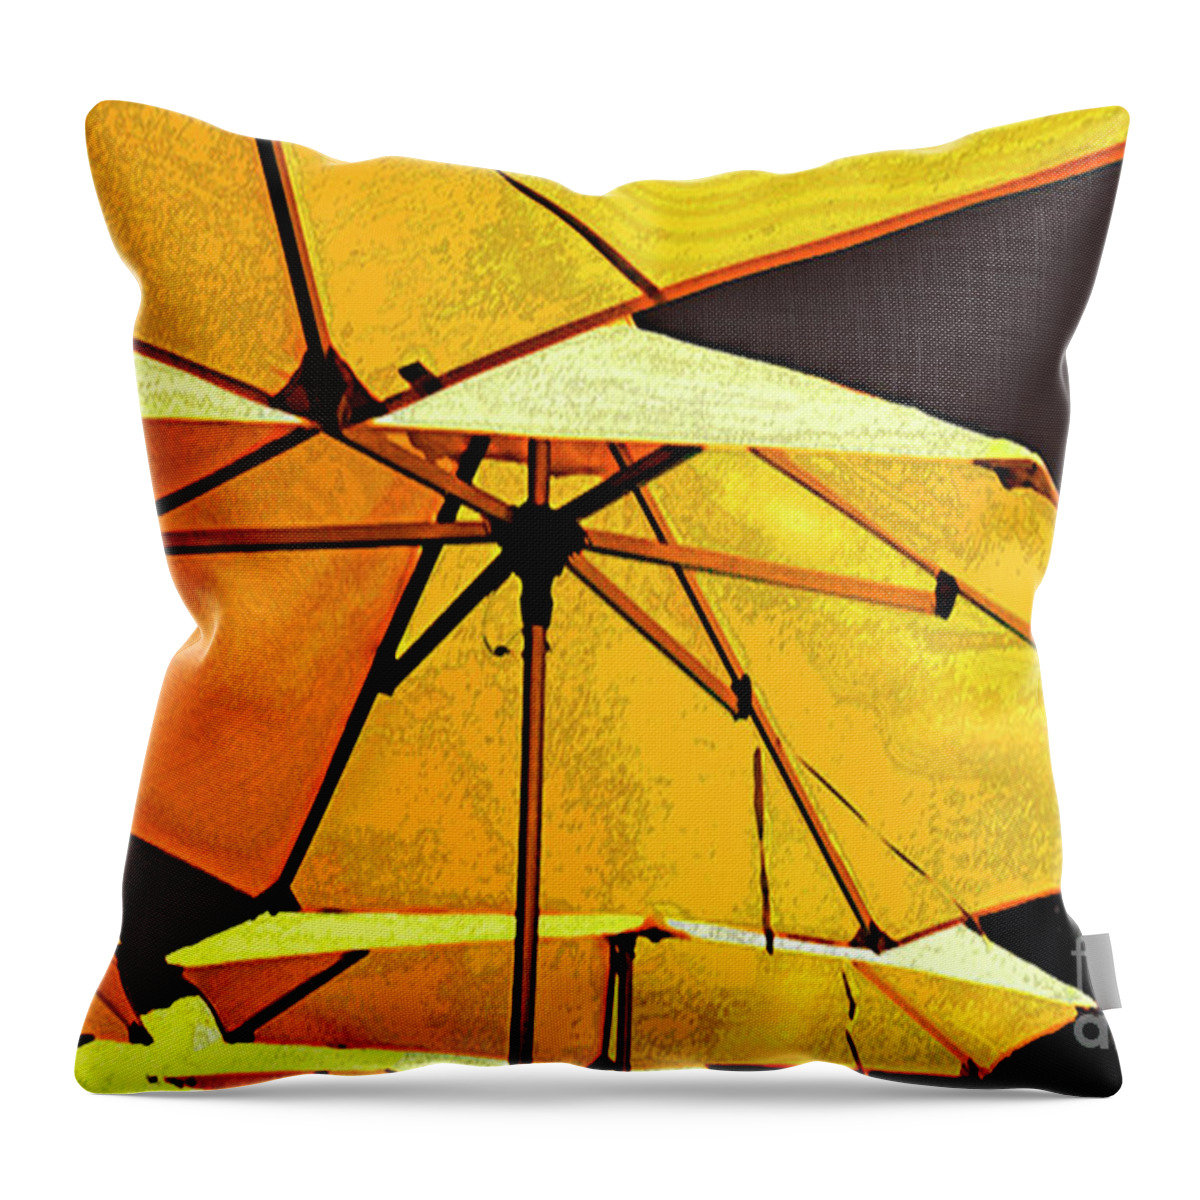 Umbrellas Throw Pillow featuring the photograph Yellow umbrellas by Deb Nakano